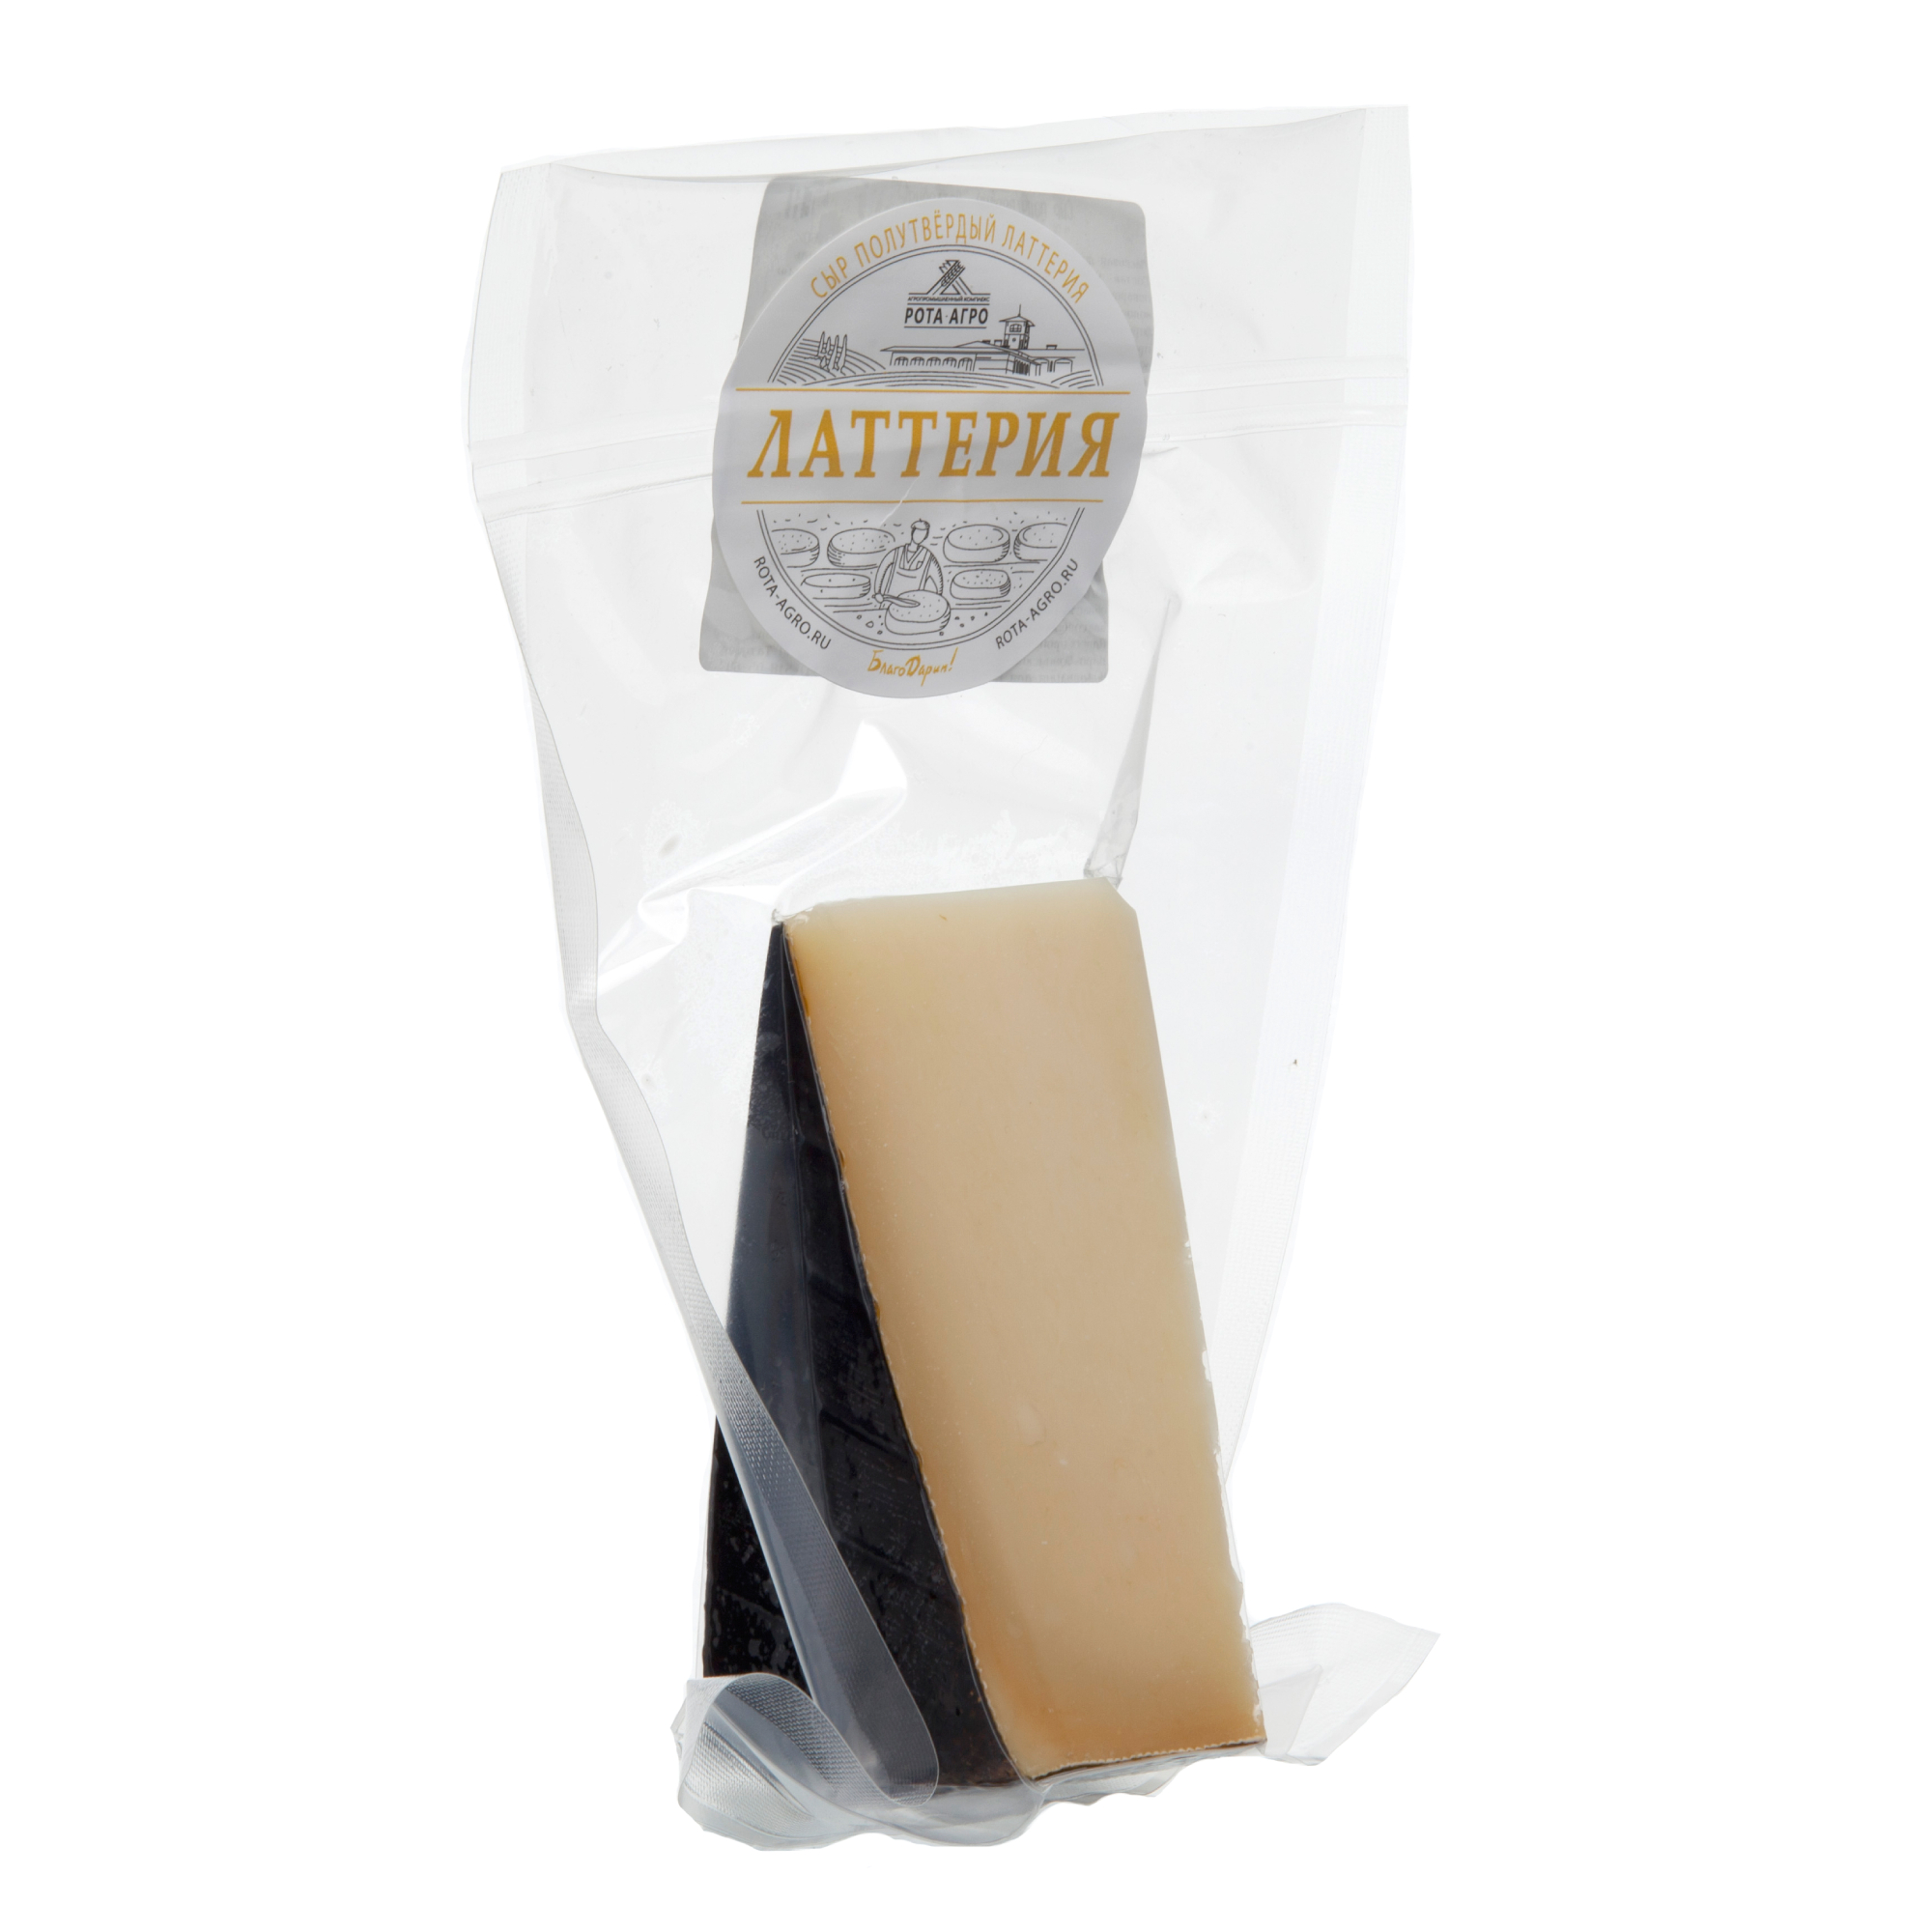 Сыр полутвёрдый РОТА-АГРО Латтерия, кг